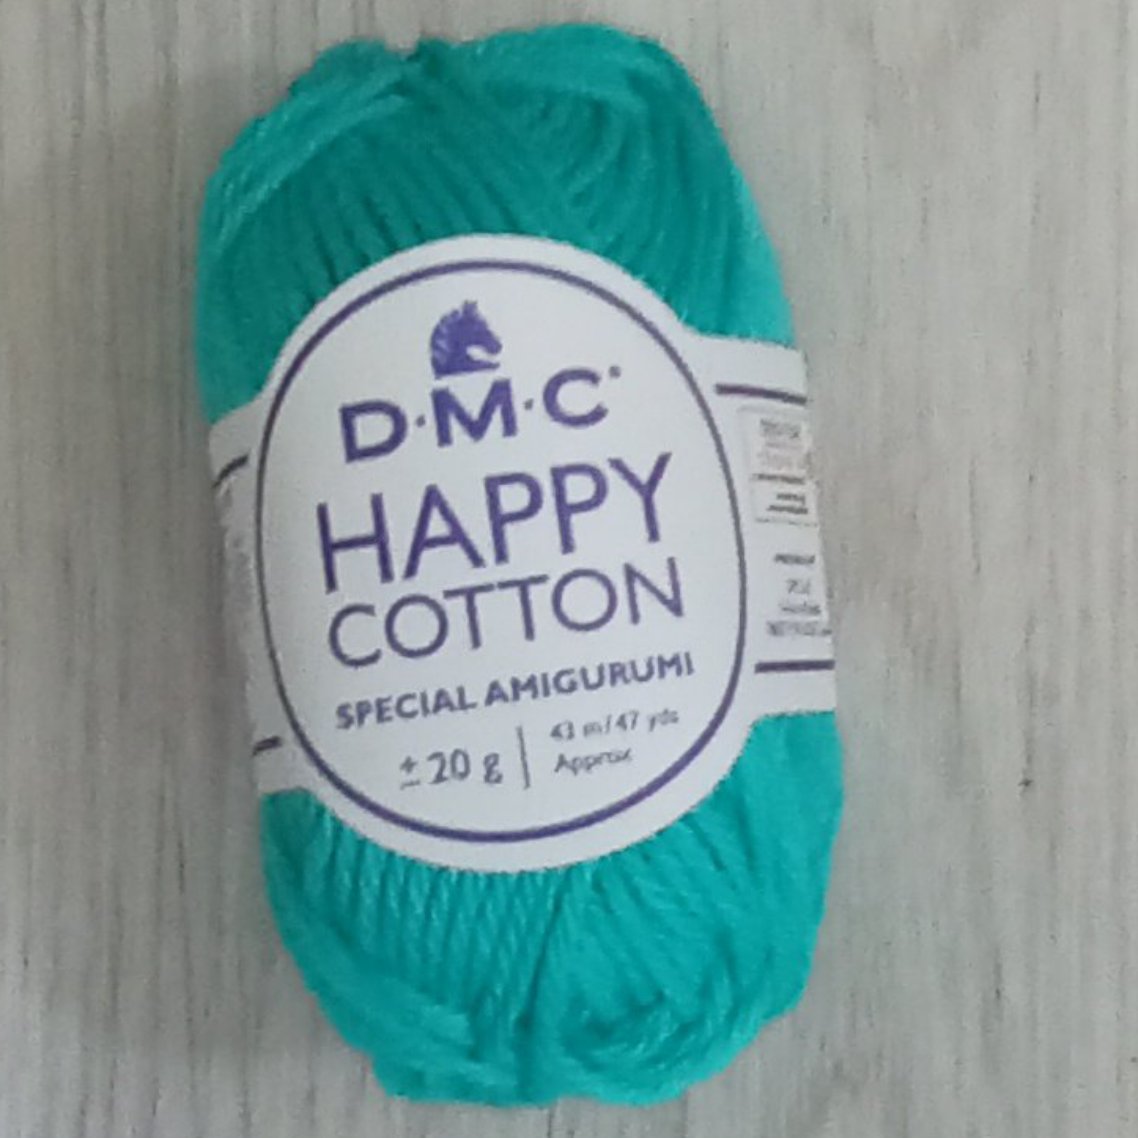 cotone per amigurumi - happy cotton - DMC - angels style shop hobbistica e materiali creativi 